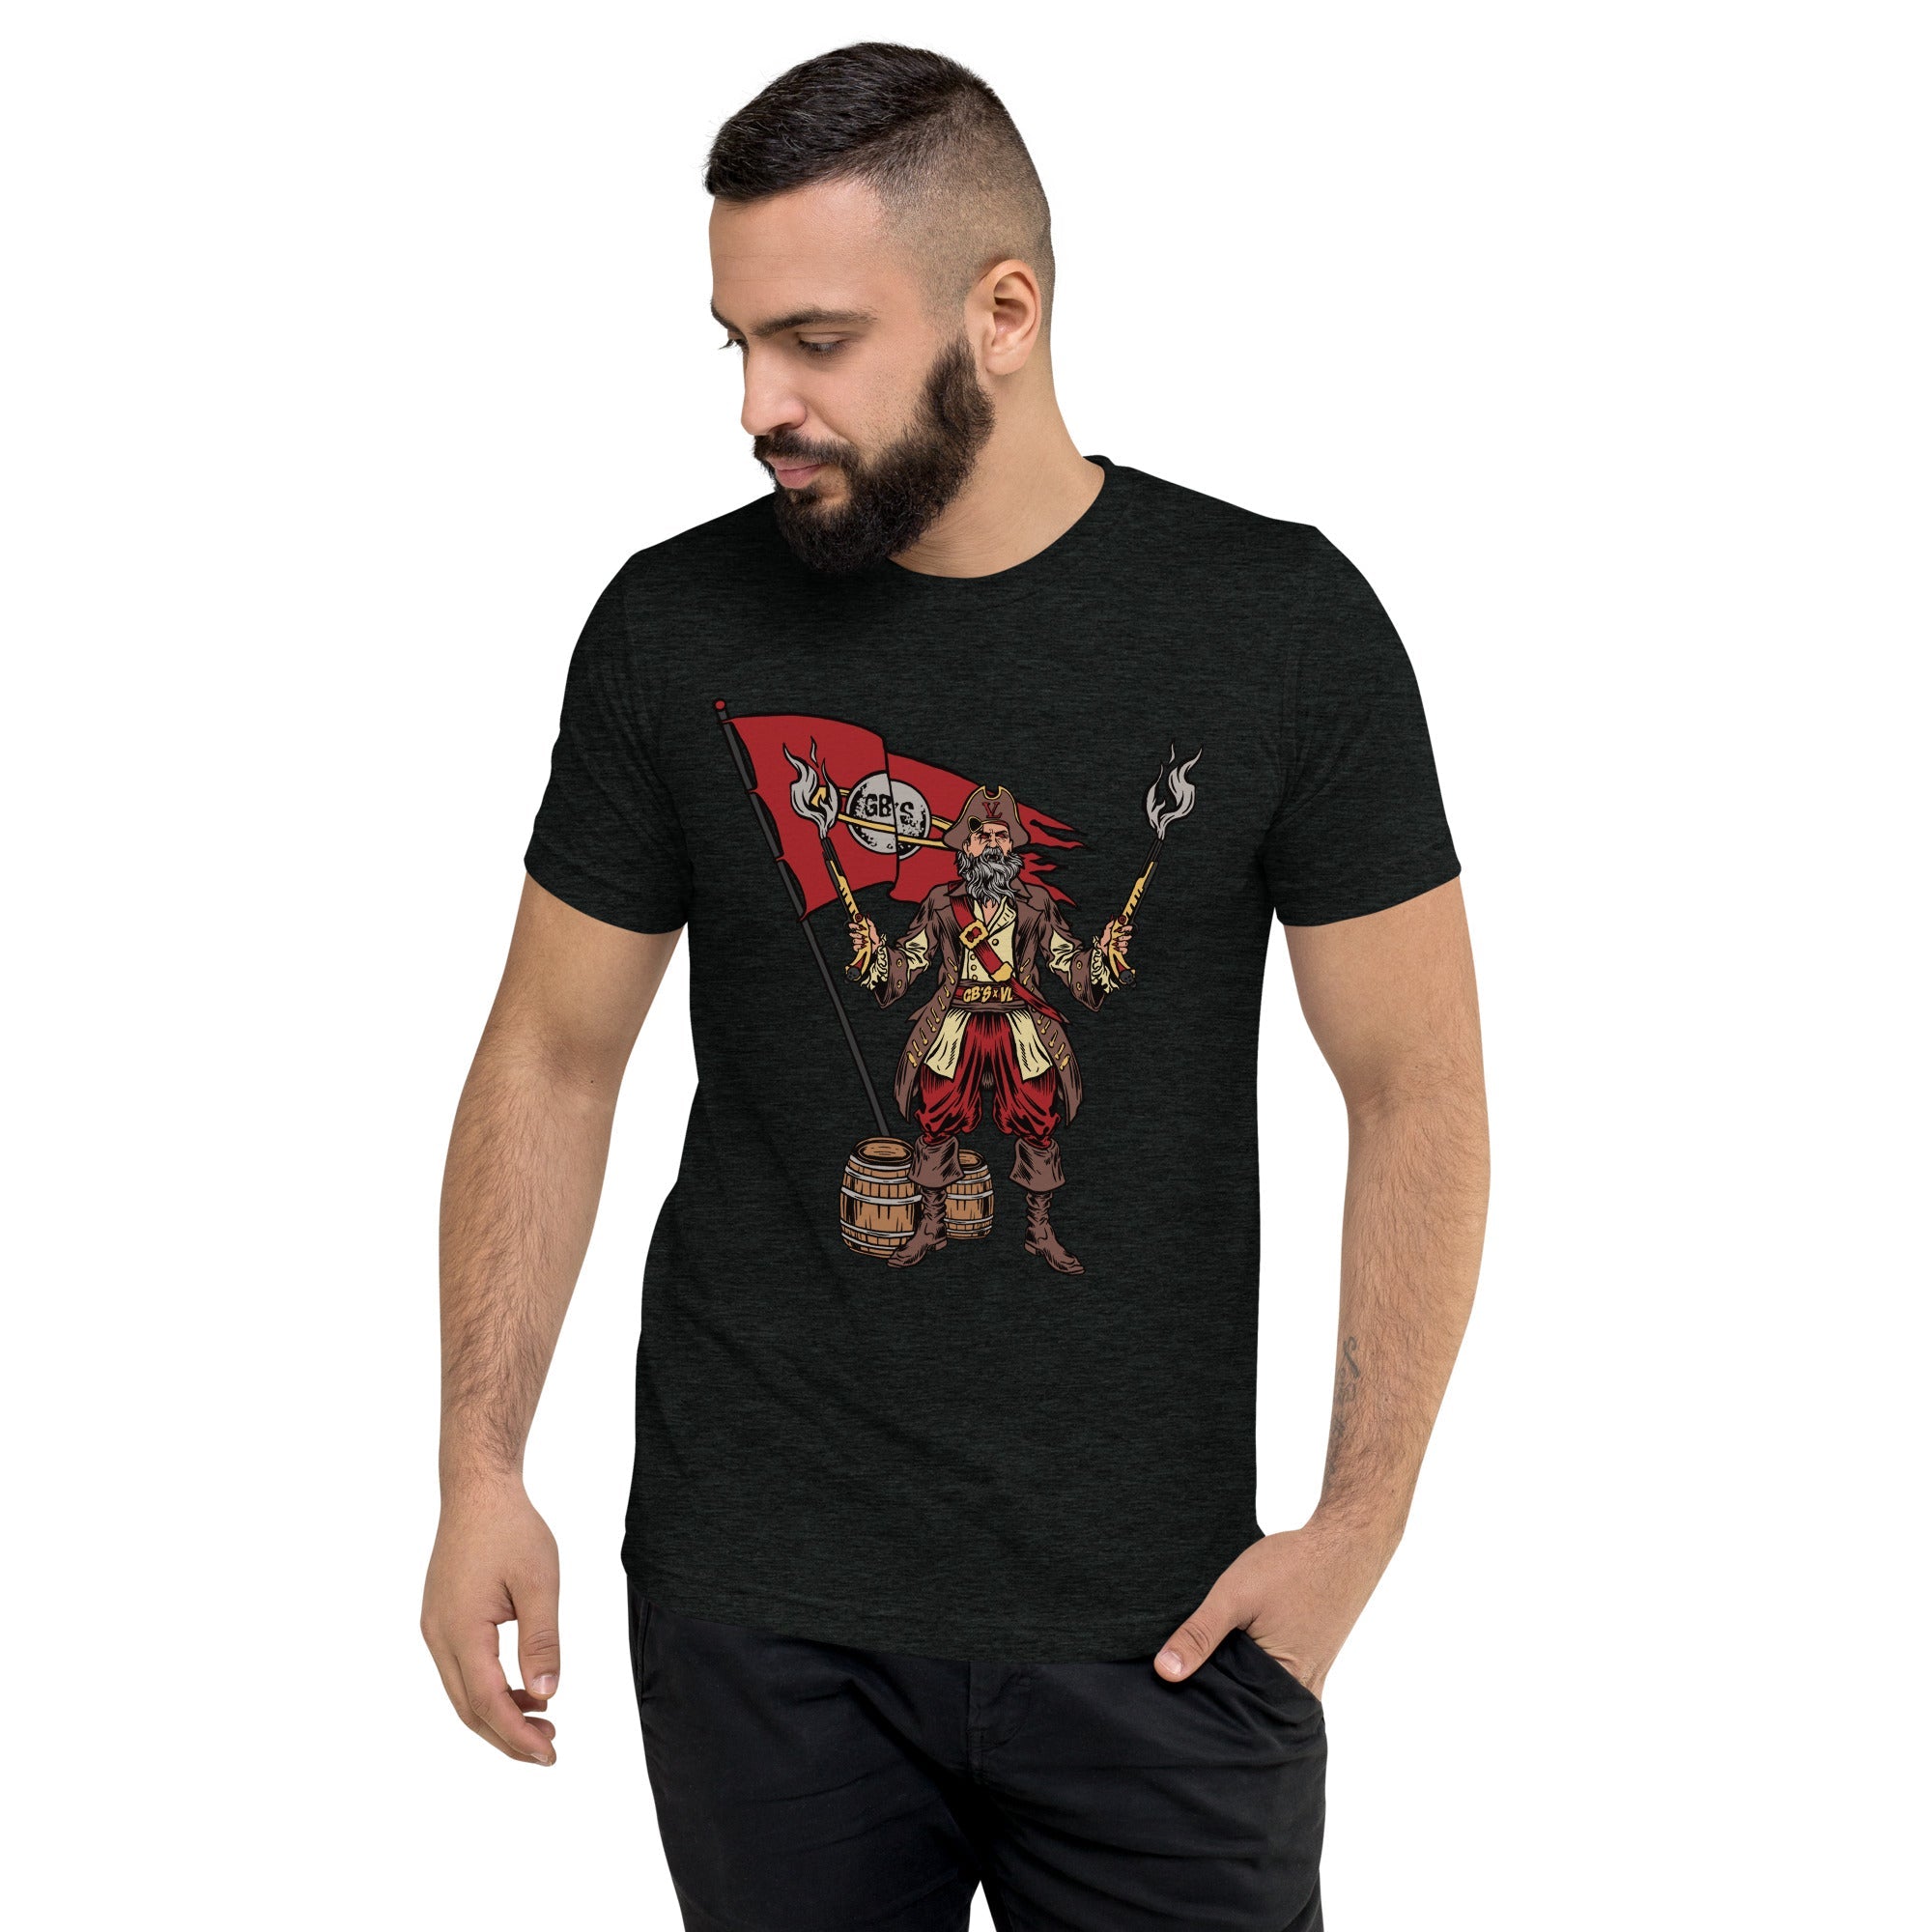 GBNY Charcoal-Black Triblend / XS Vamp Life X GBNY "Pirate Vamp" T-shirt - Men's 1187077_6504